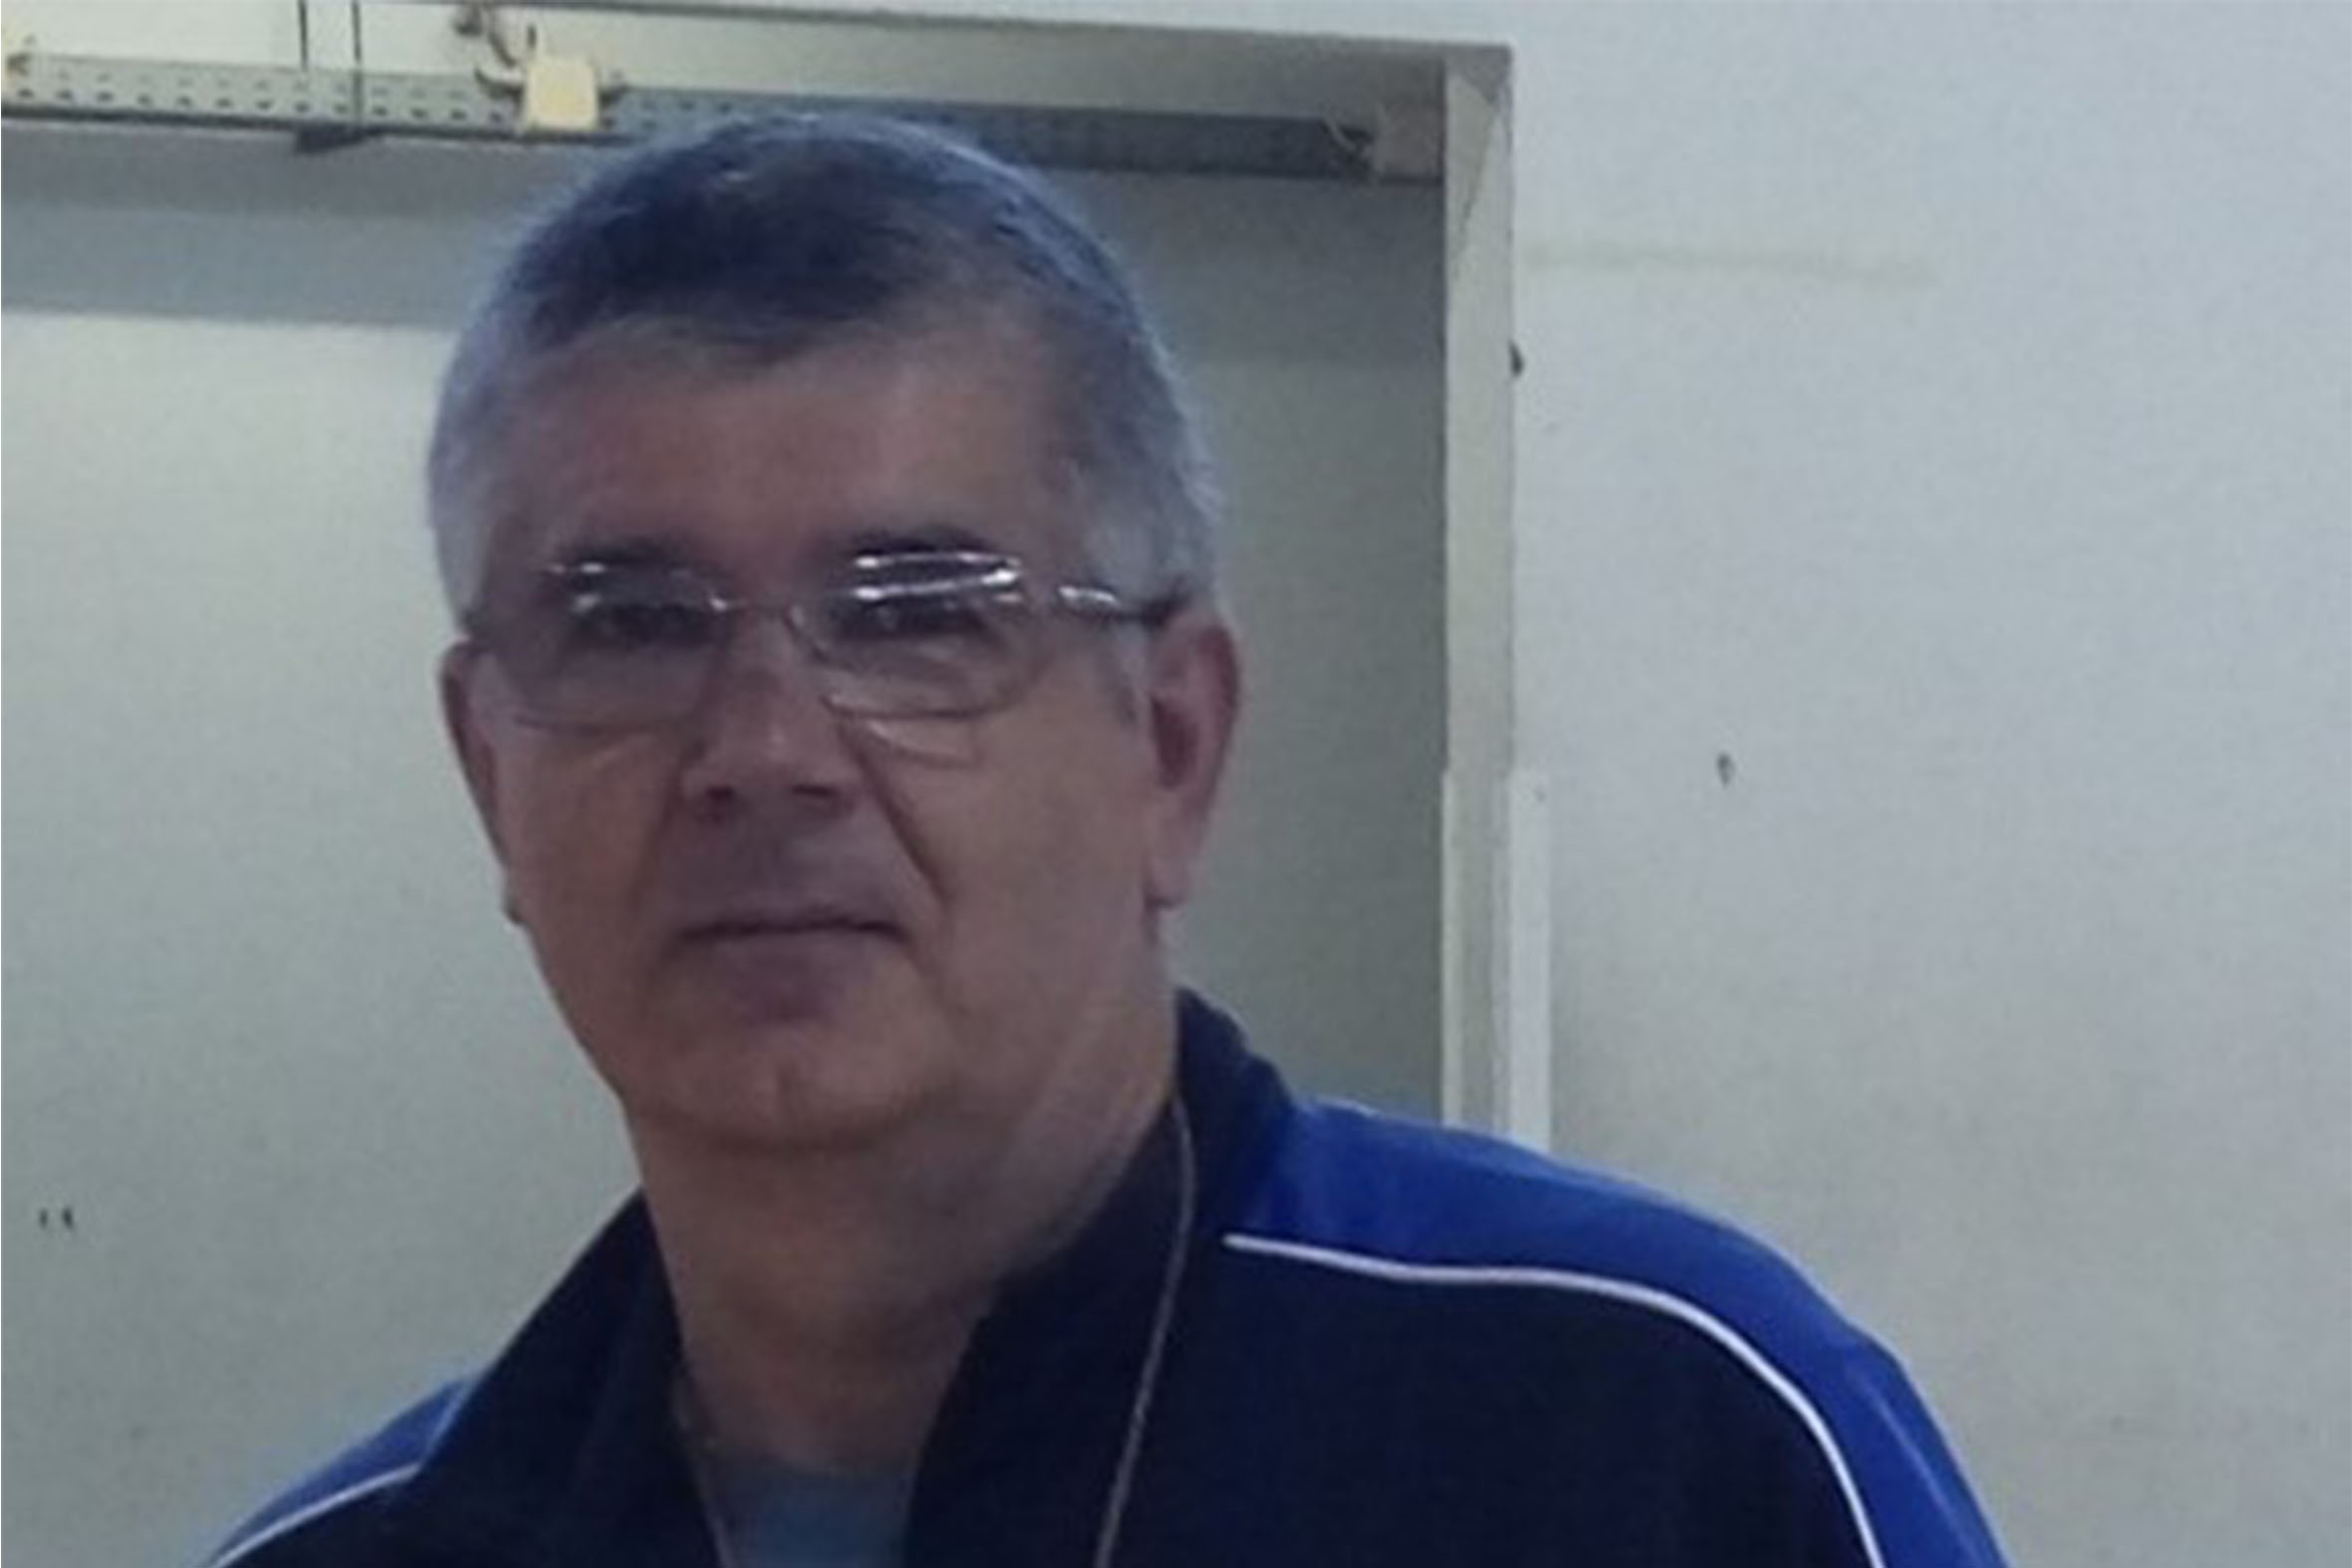 Caras AFH | Vítor de Sousa - Treinador de Futsal:  “O treino é o mais desafiante para mim”